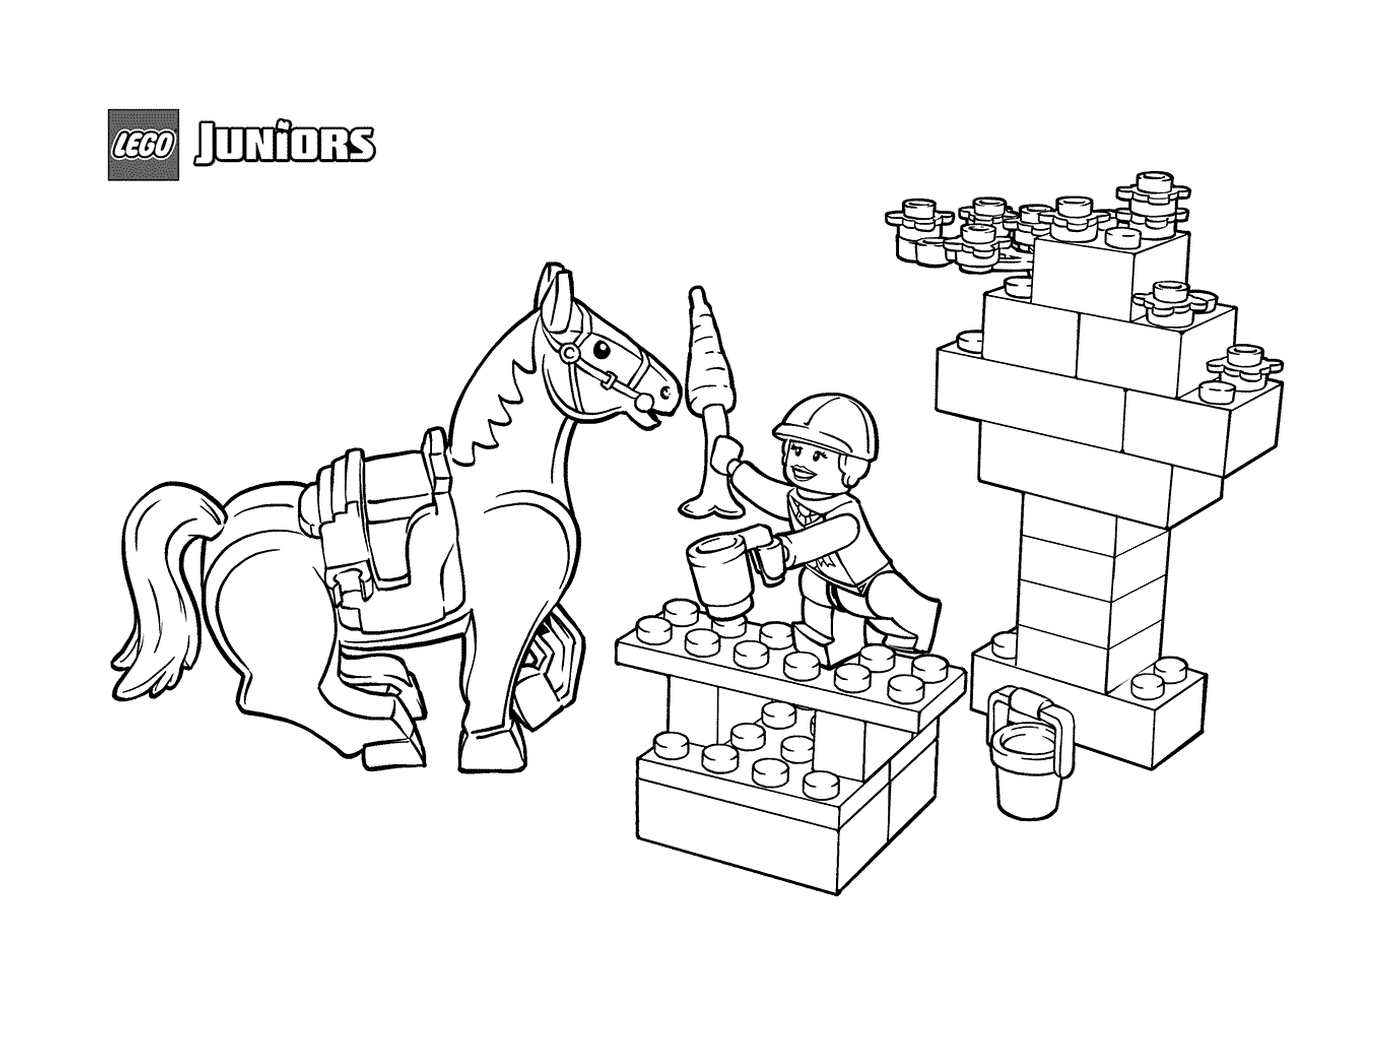  Imbisspferde in LEGO Junior 